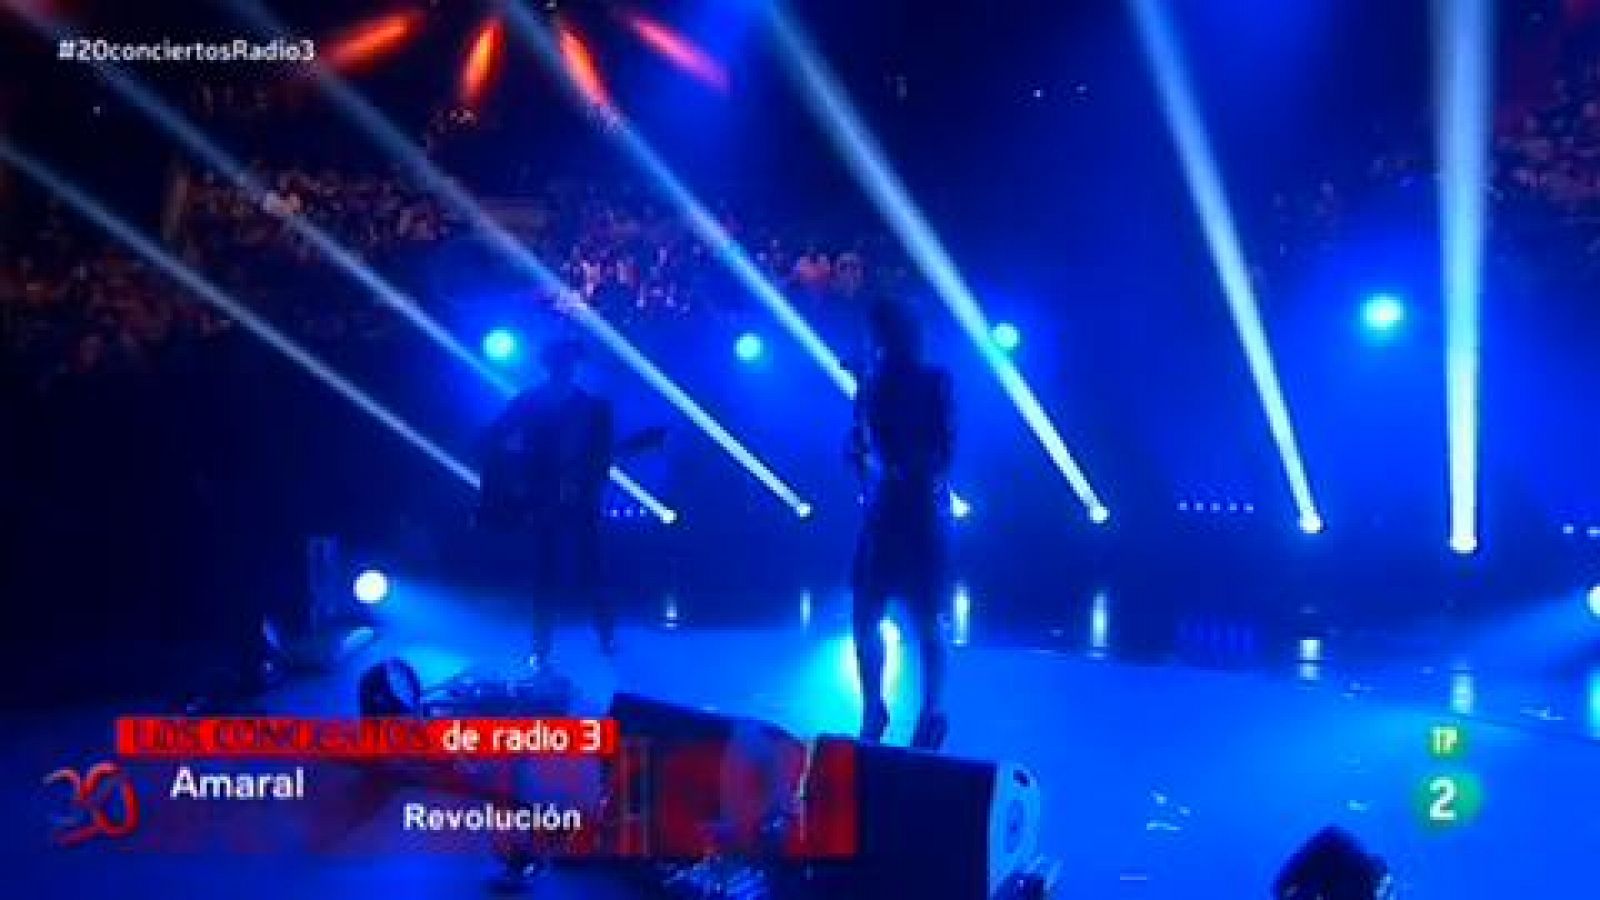 Concierto Radio 3 - Amaral canta "Revolución"